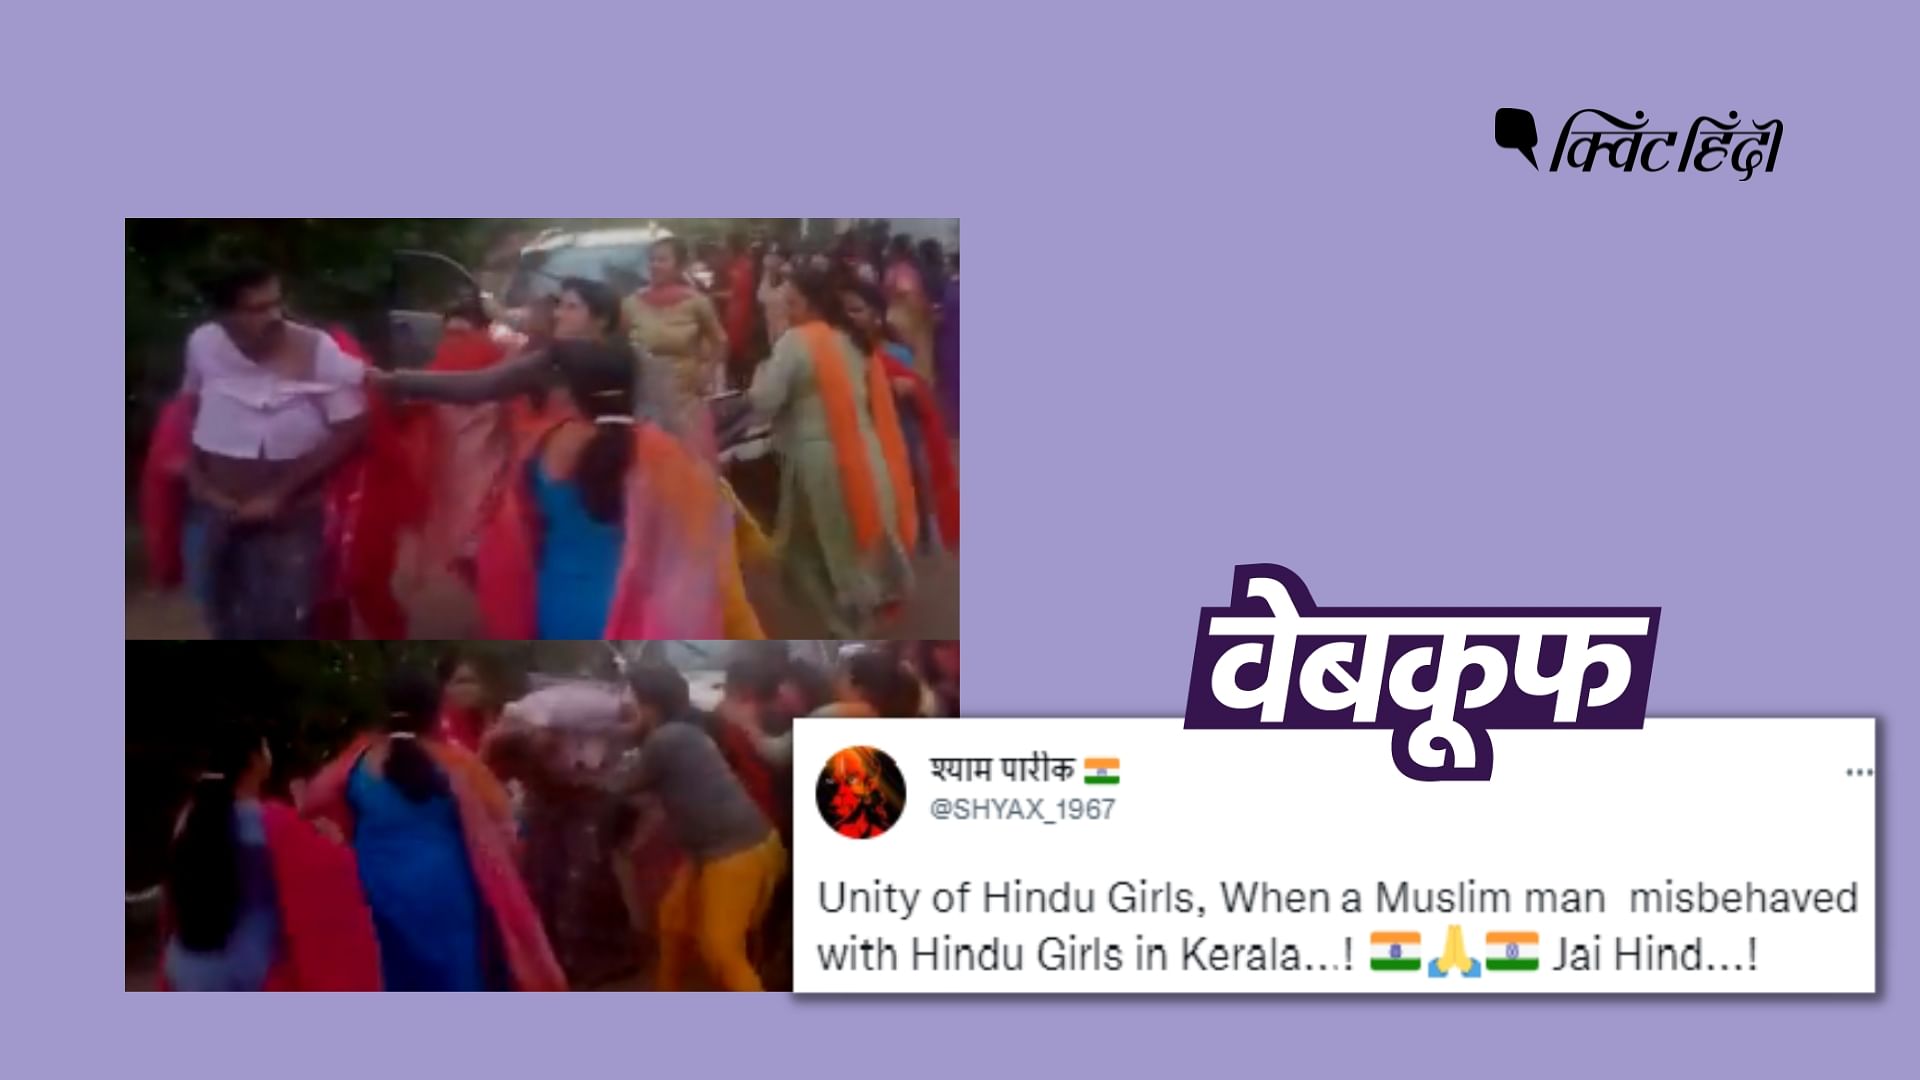 <div class="paragraphs"><p>मुस्लिम शख्स को पीटती हिंदू महिलाओं का बताकर वायरल है ये वीडियो&nbsp;</p></div>